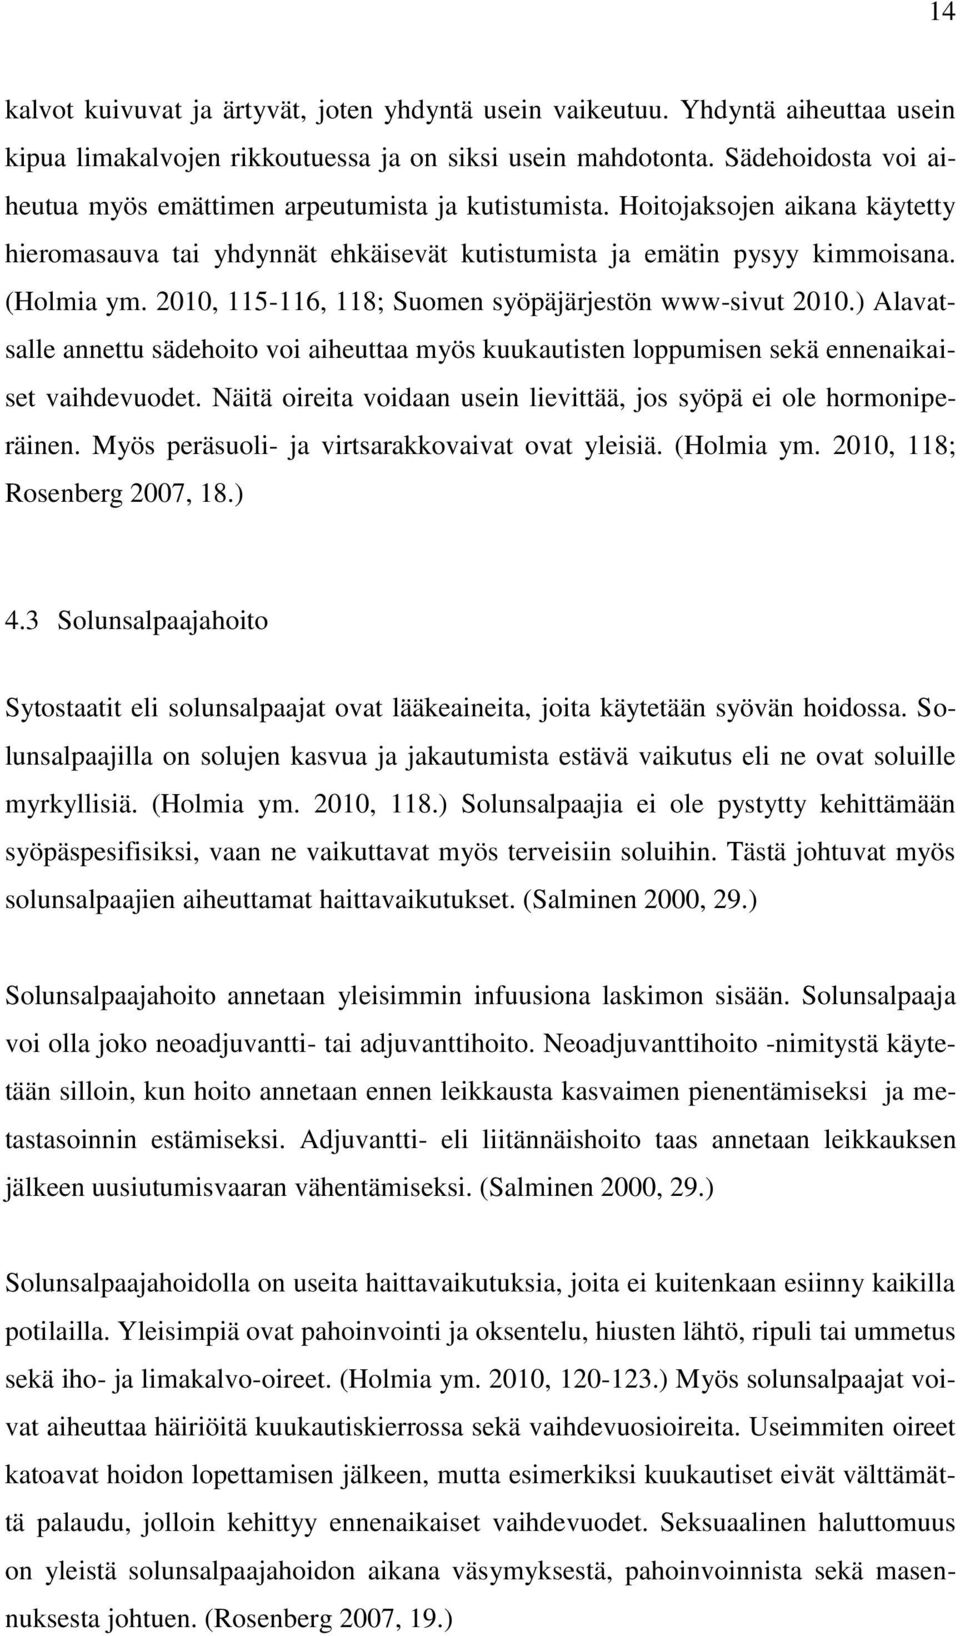 2010, 115-116, 118; Suomen syöpäjärjestön www-sivut 2010.) Alavatsalle annettu sädehoito voi aiheuttaa myös kuukautisten loppumisen sekä ennenaikaiset vaihdevuodet.